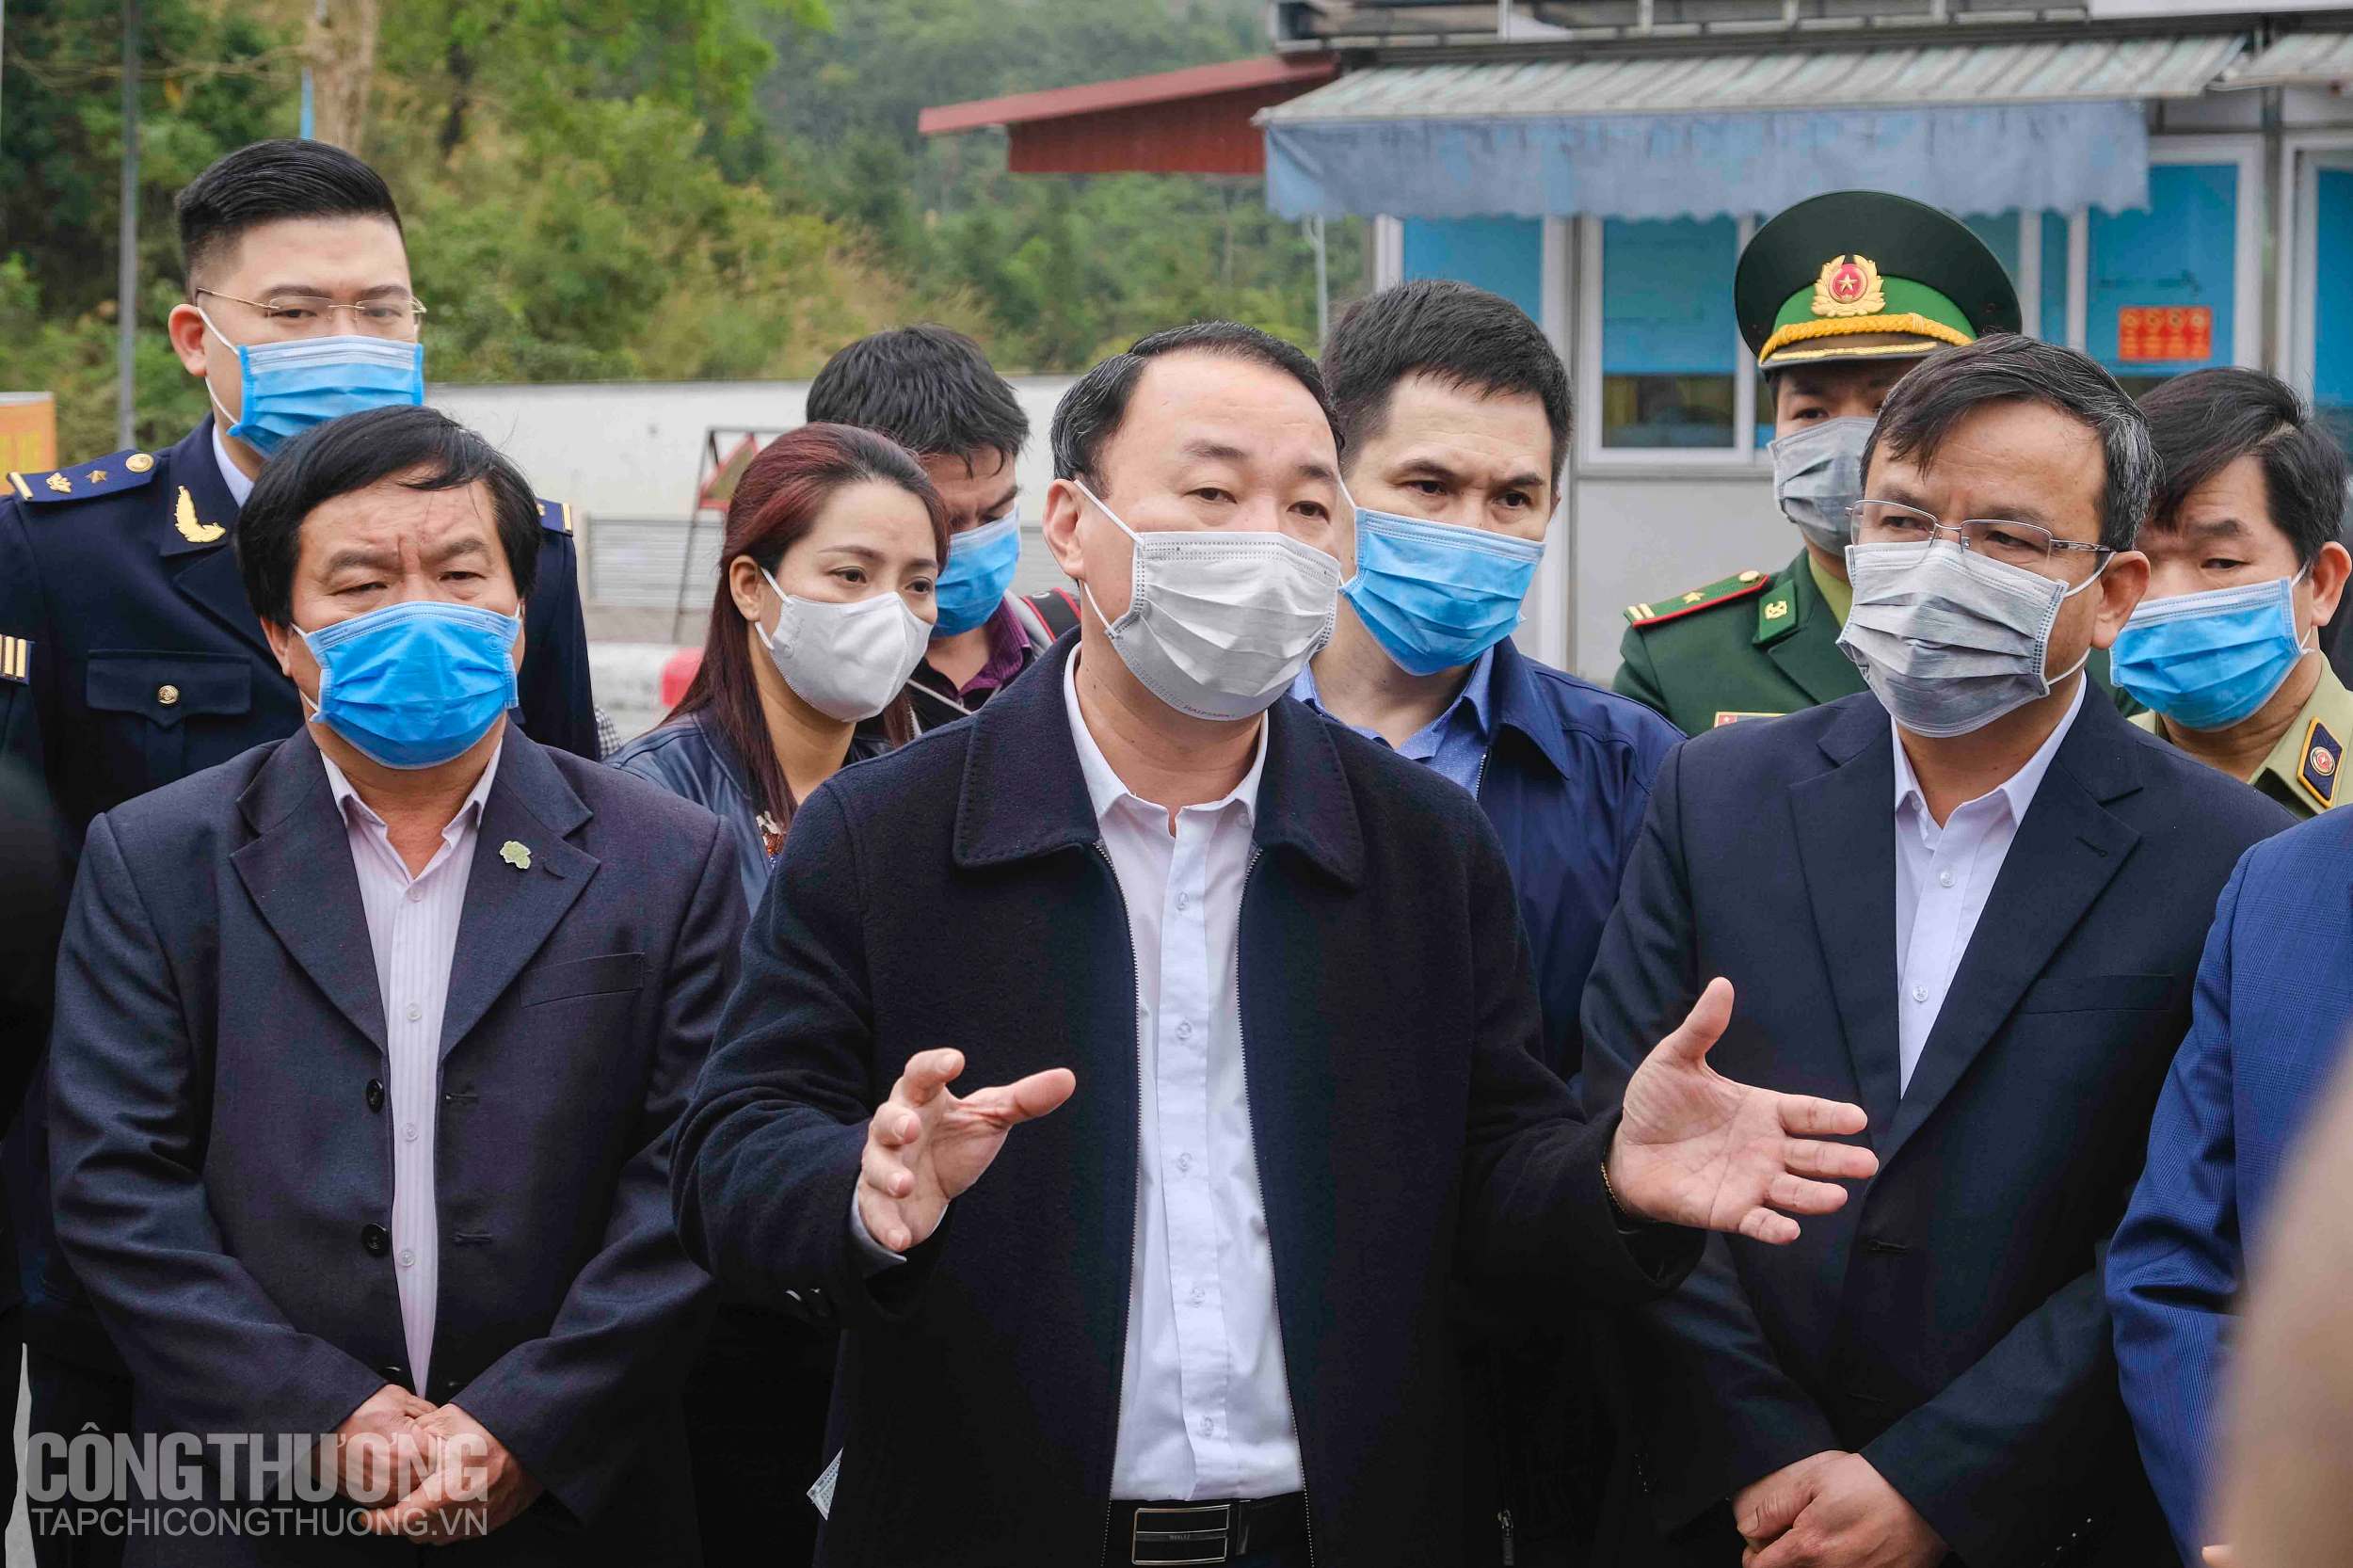 Lãnh đạo tỉnh Lạng Sơn cho biết quá trình thực hiện thông quan đặt yếu tố an toàn y tế lên hàng đầu